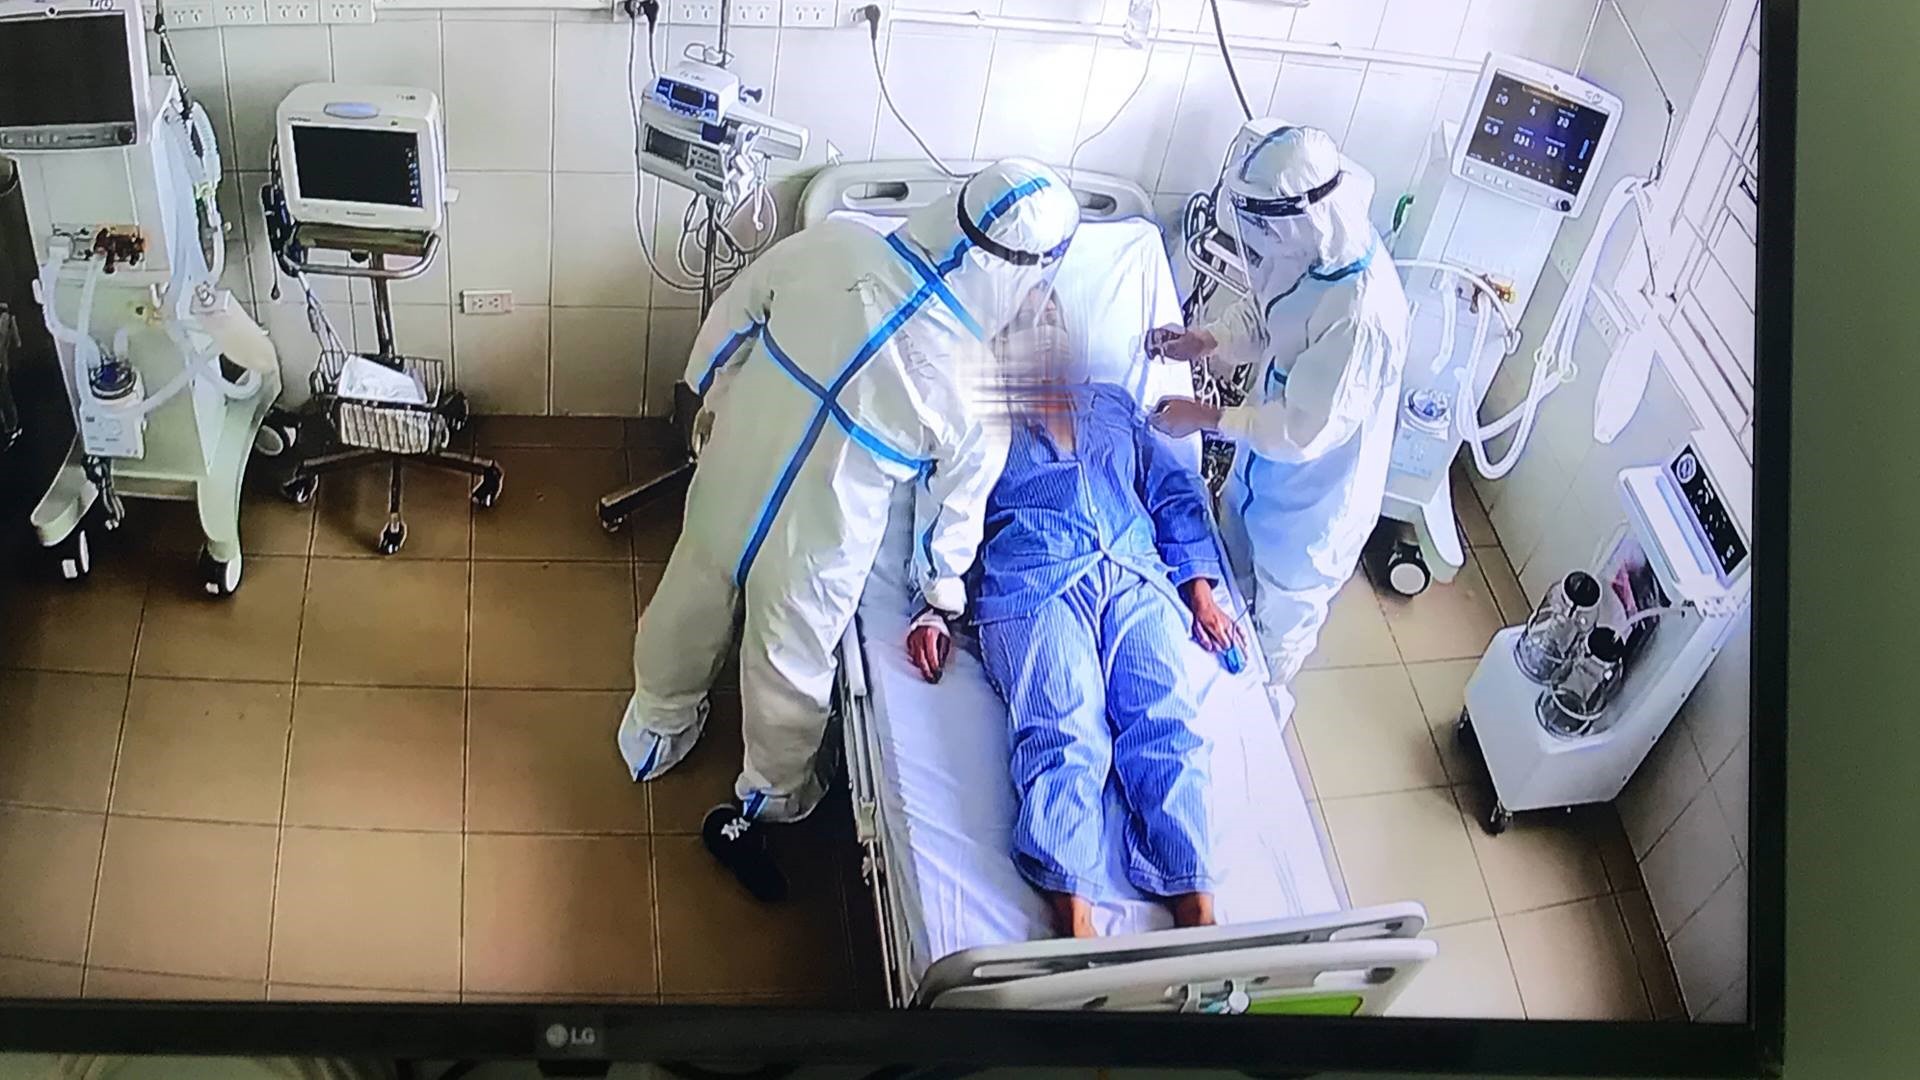 Trung tâm Hồi sức tích cực lớn nhất miền Bắc tiếp nhận 6 bệnh nhân Covid-19 nặng